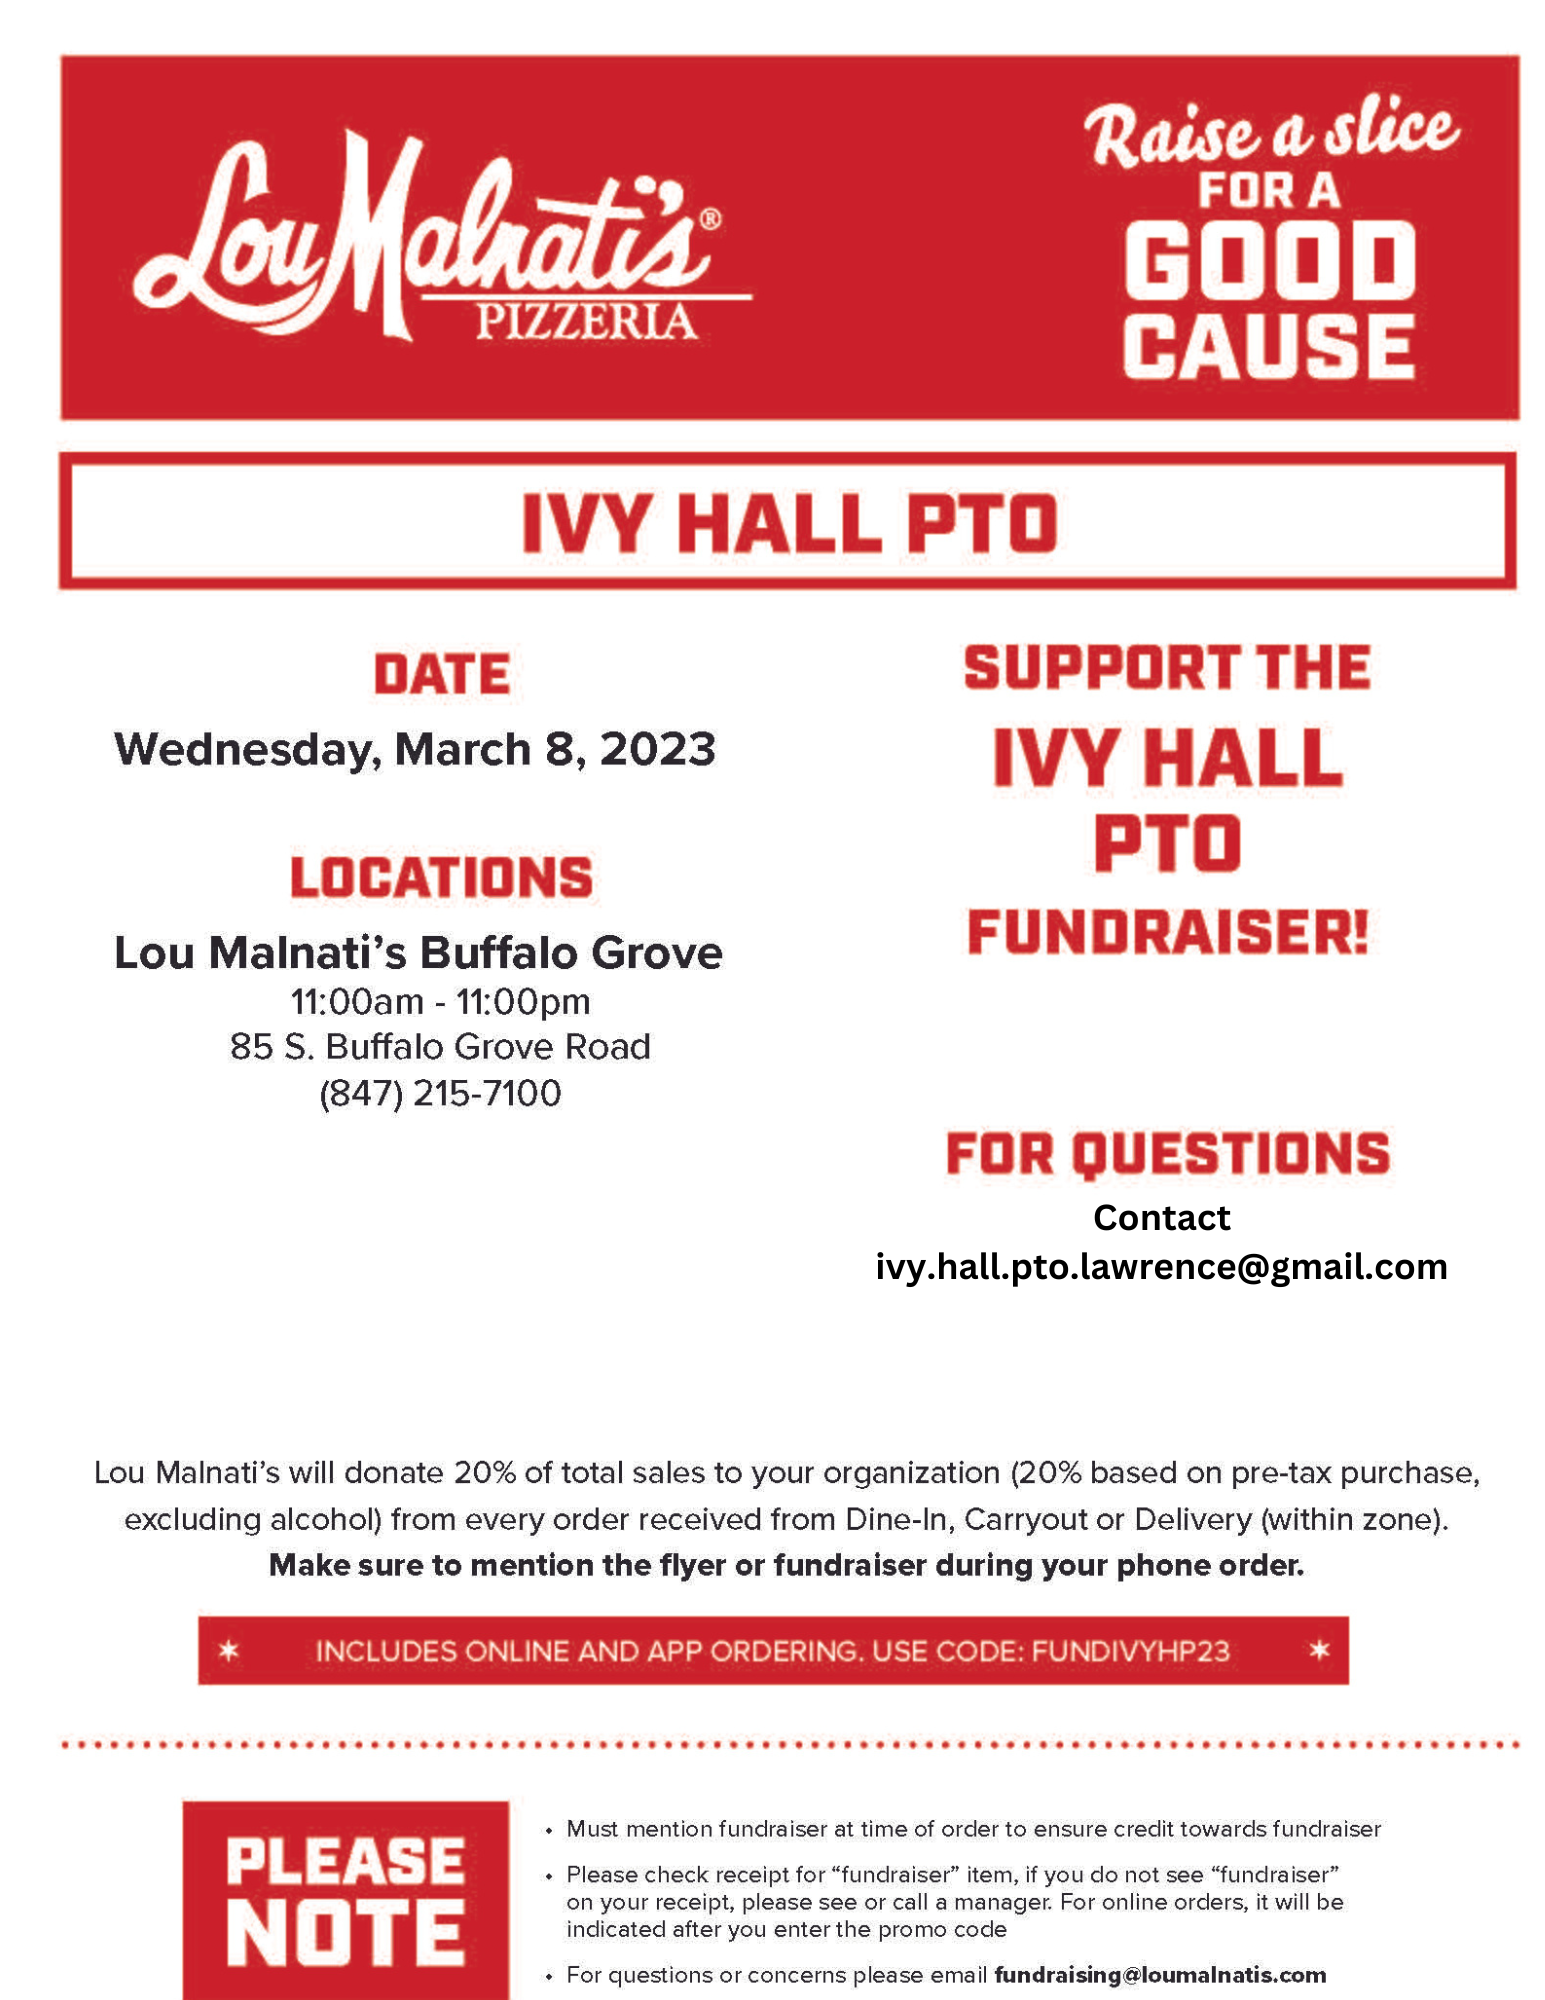 Lou Malnati Pizza Fundraiser: March 8, 2023